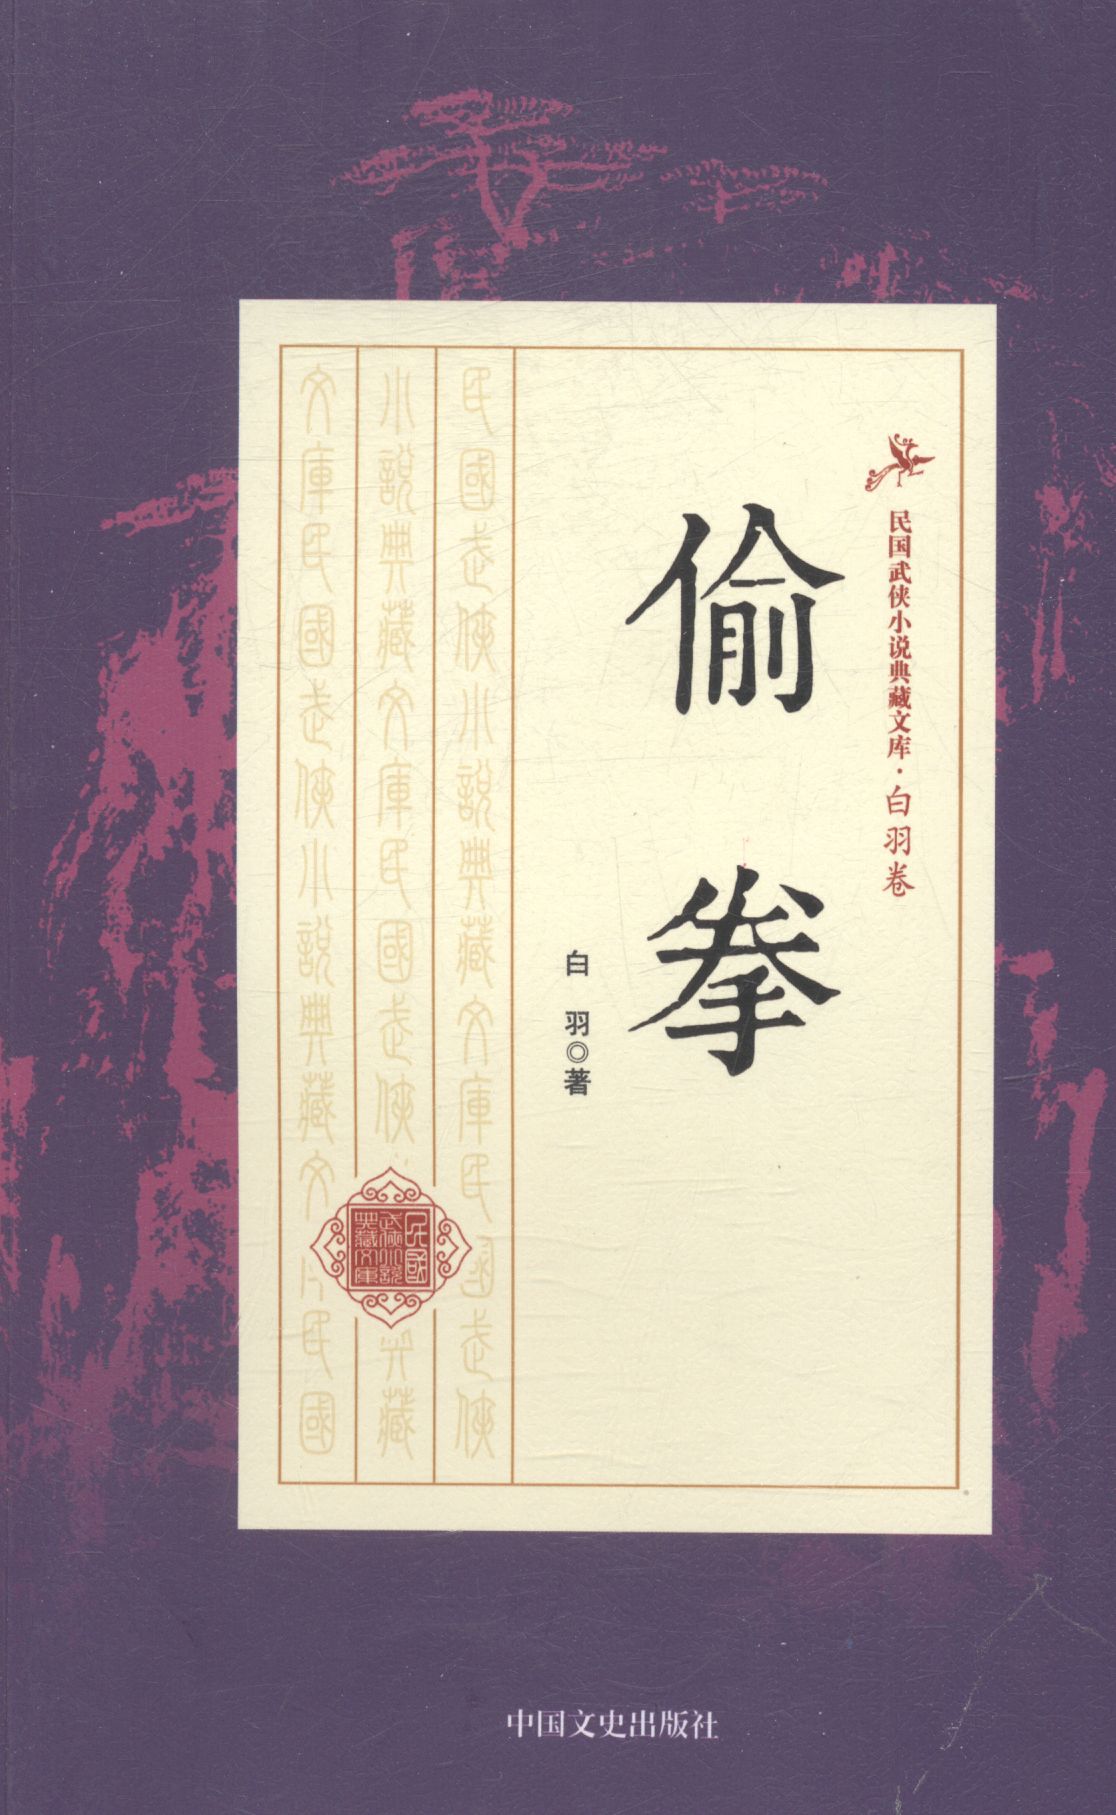 偷拳 小说 白羽著 中国文史出版社 9787503483653